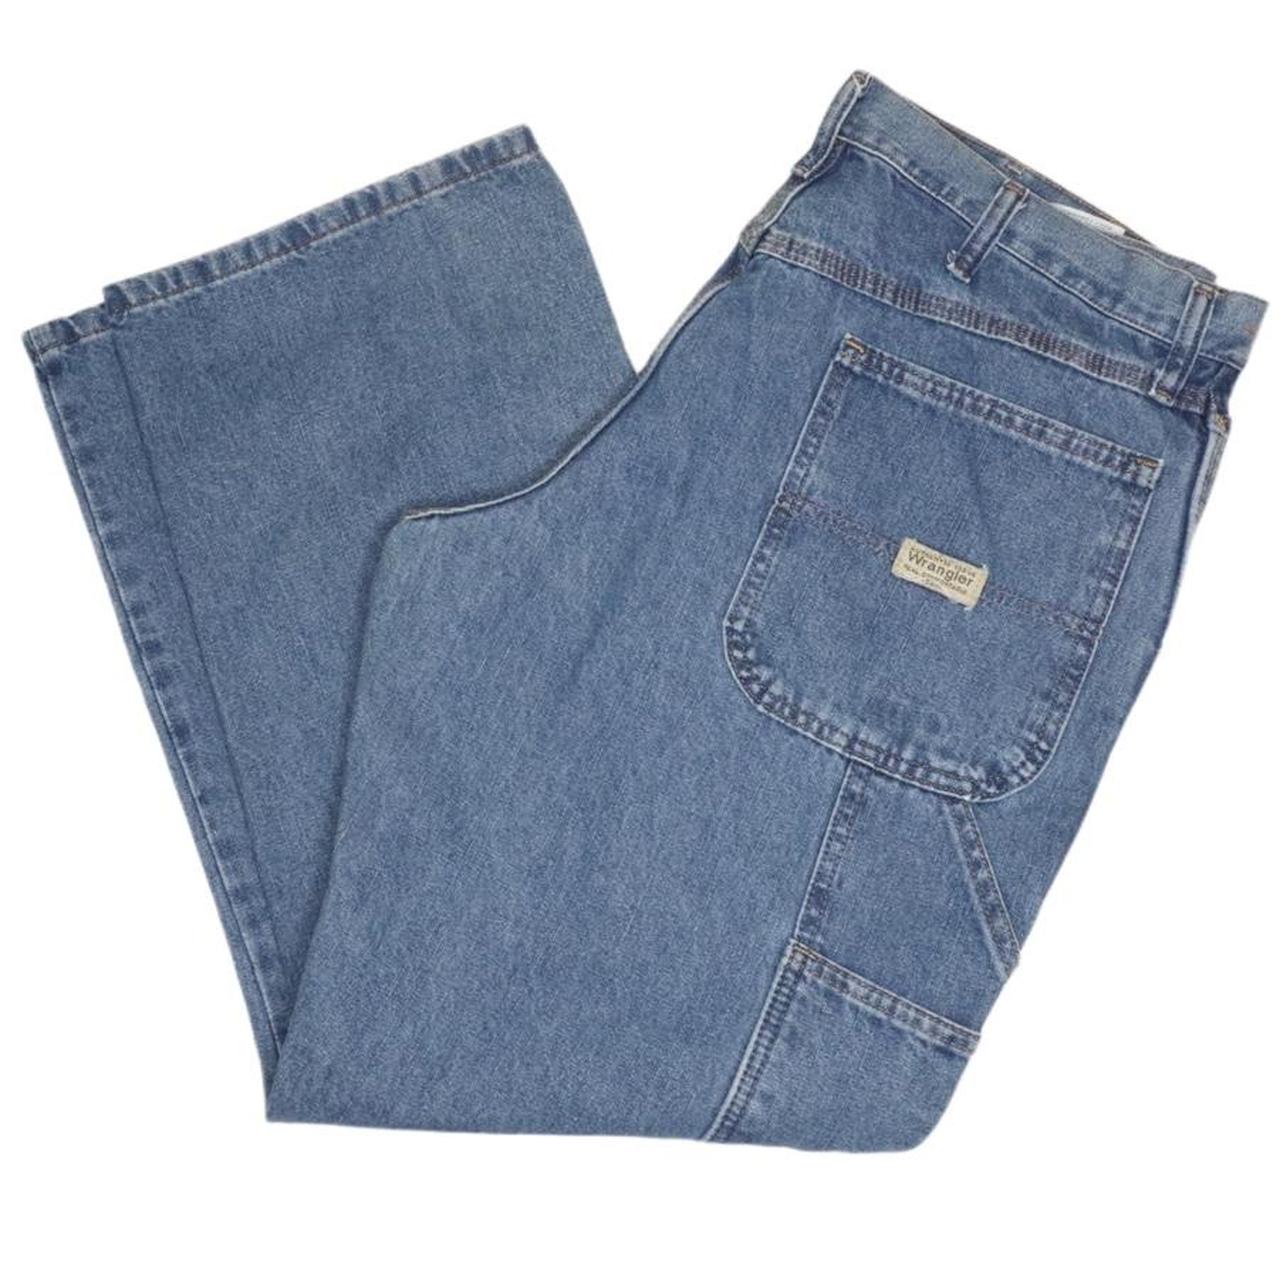 Vintage wrangler, baggy fit carpenter jeans Size 34... - Depop